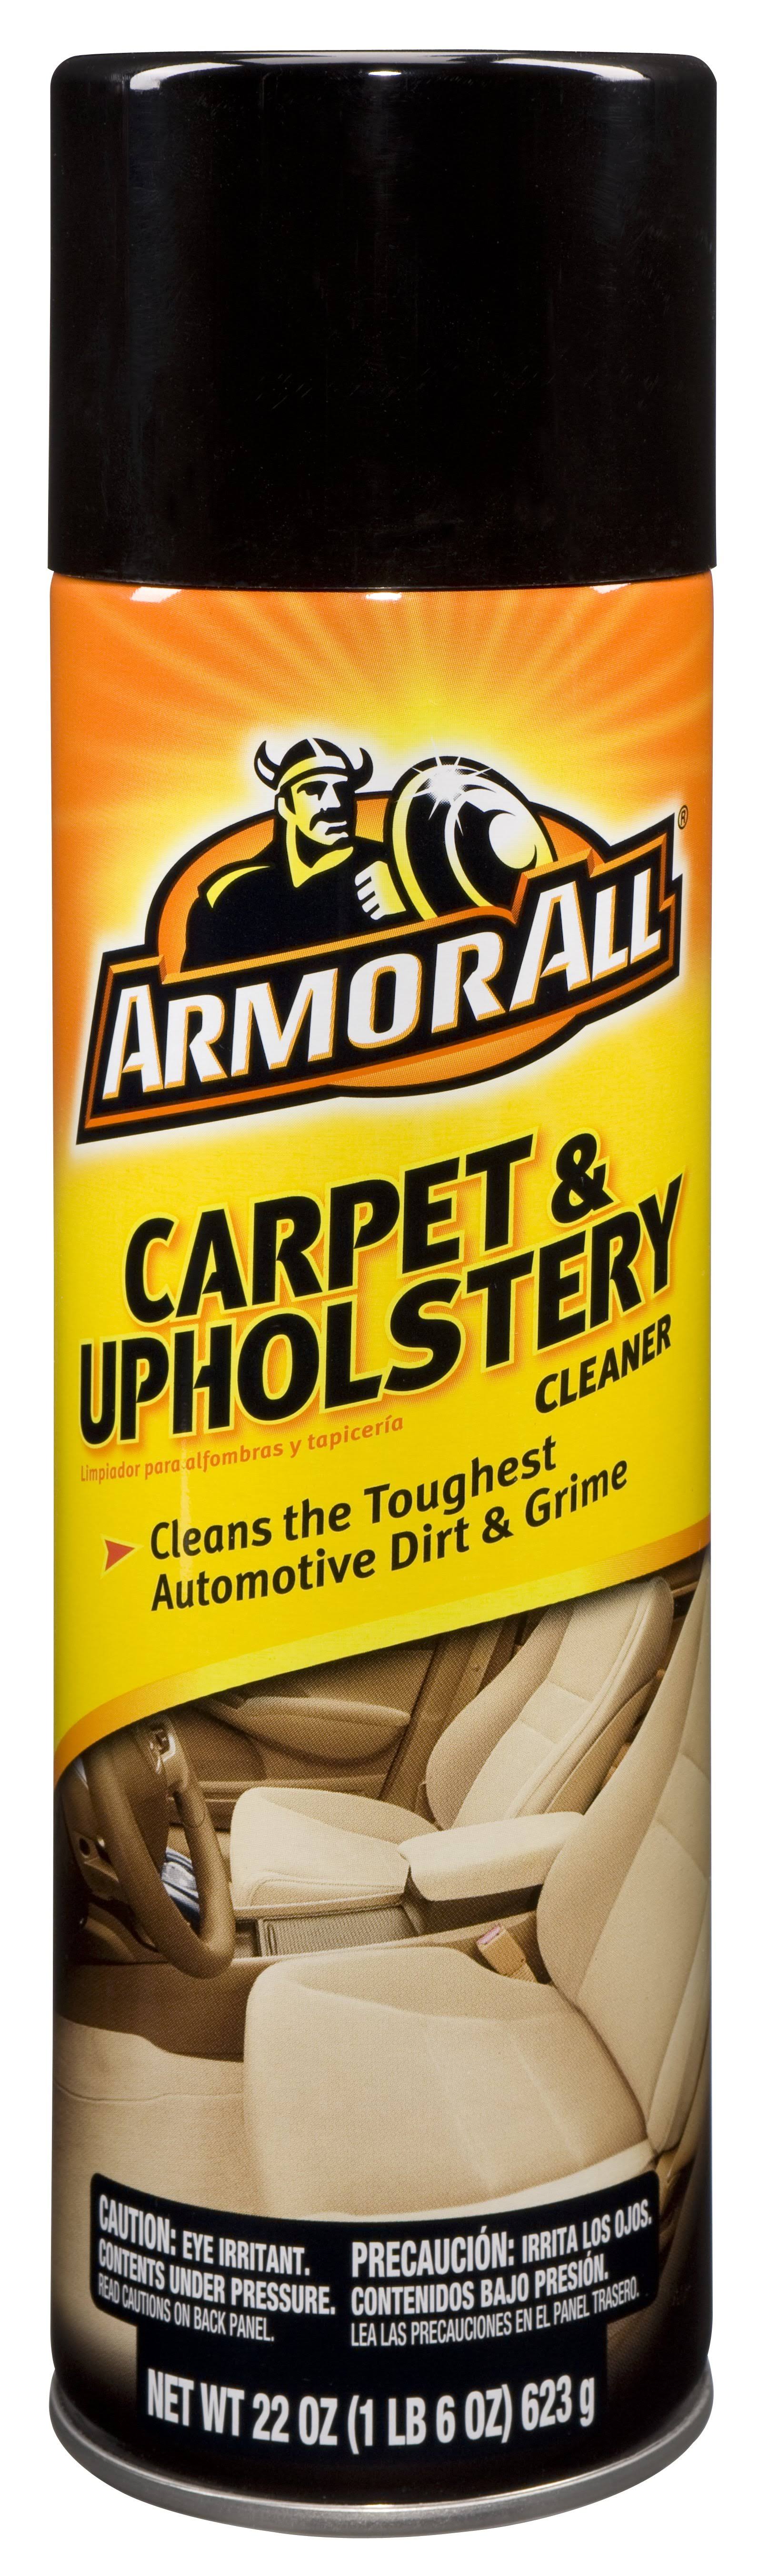 Armor All Carpet & Upholstery Cleaner